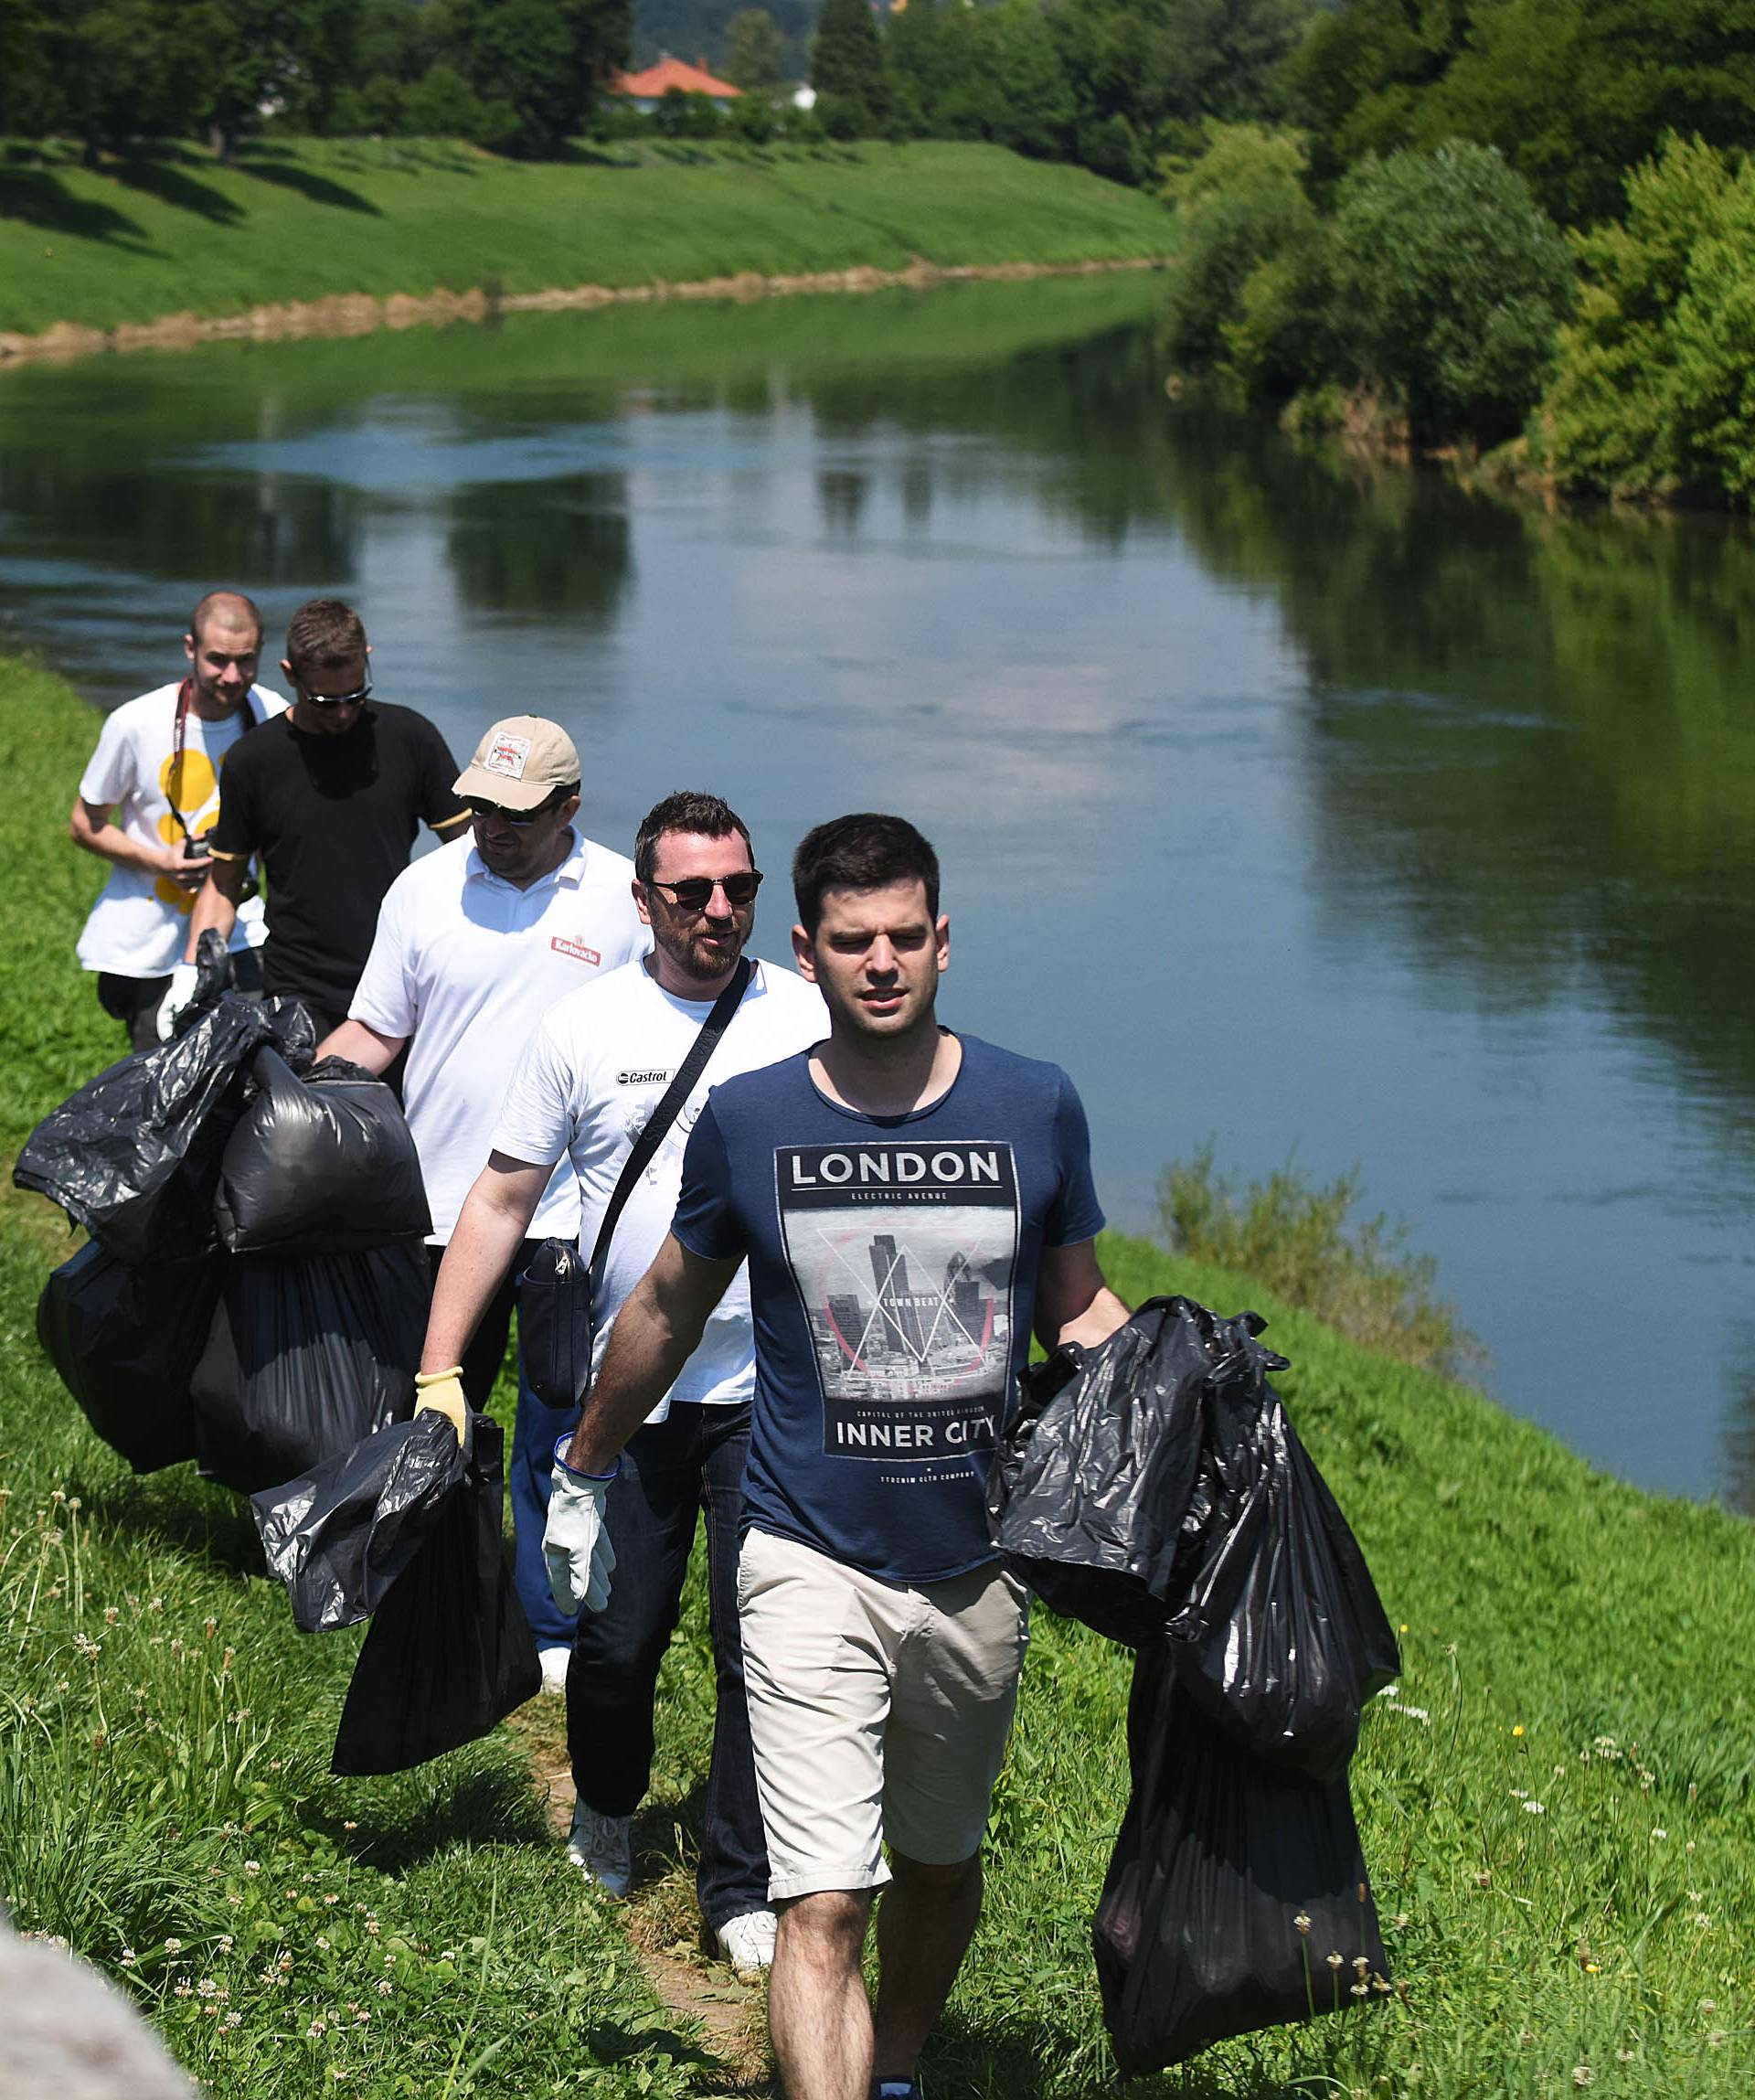 Volonteri u Karlovcu očistili obale rijeke Kupe